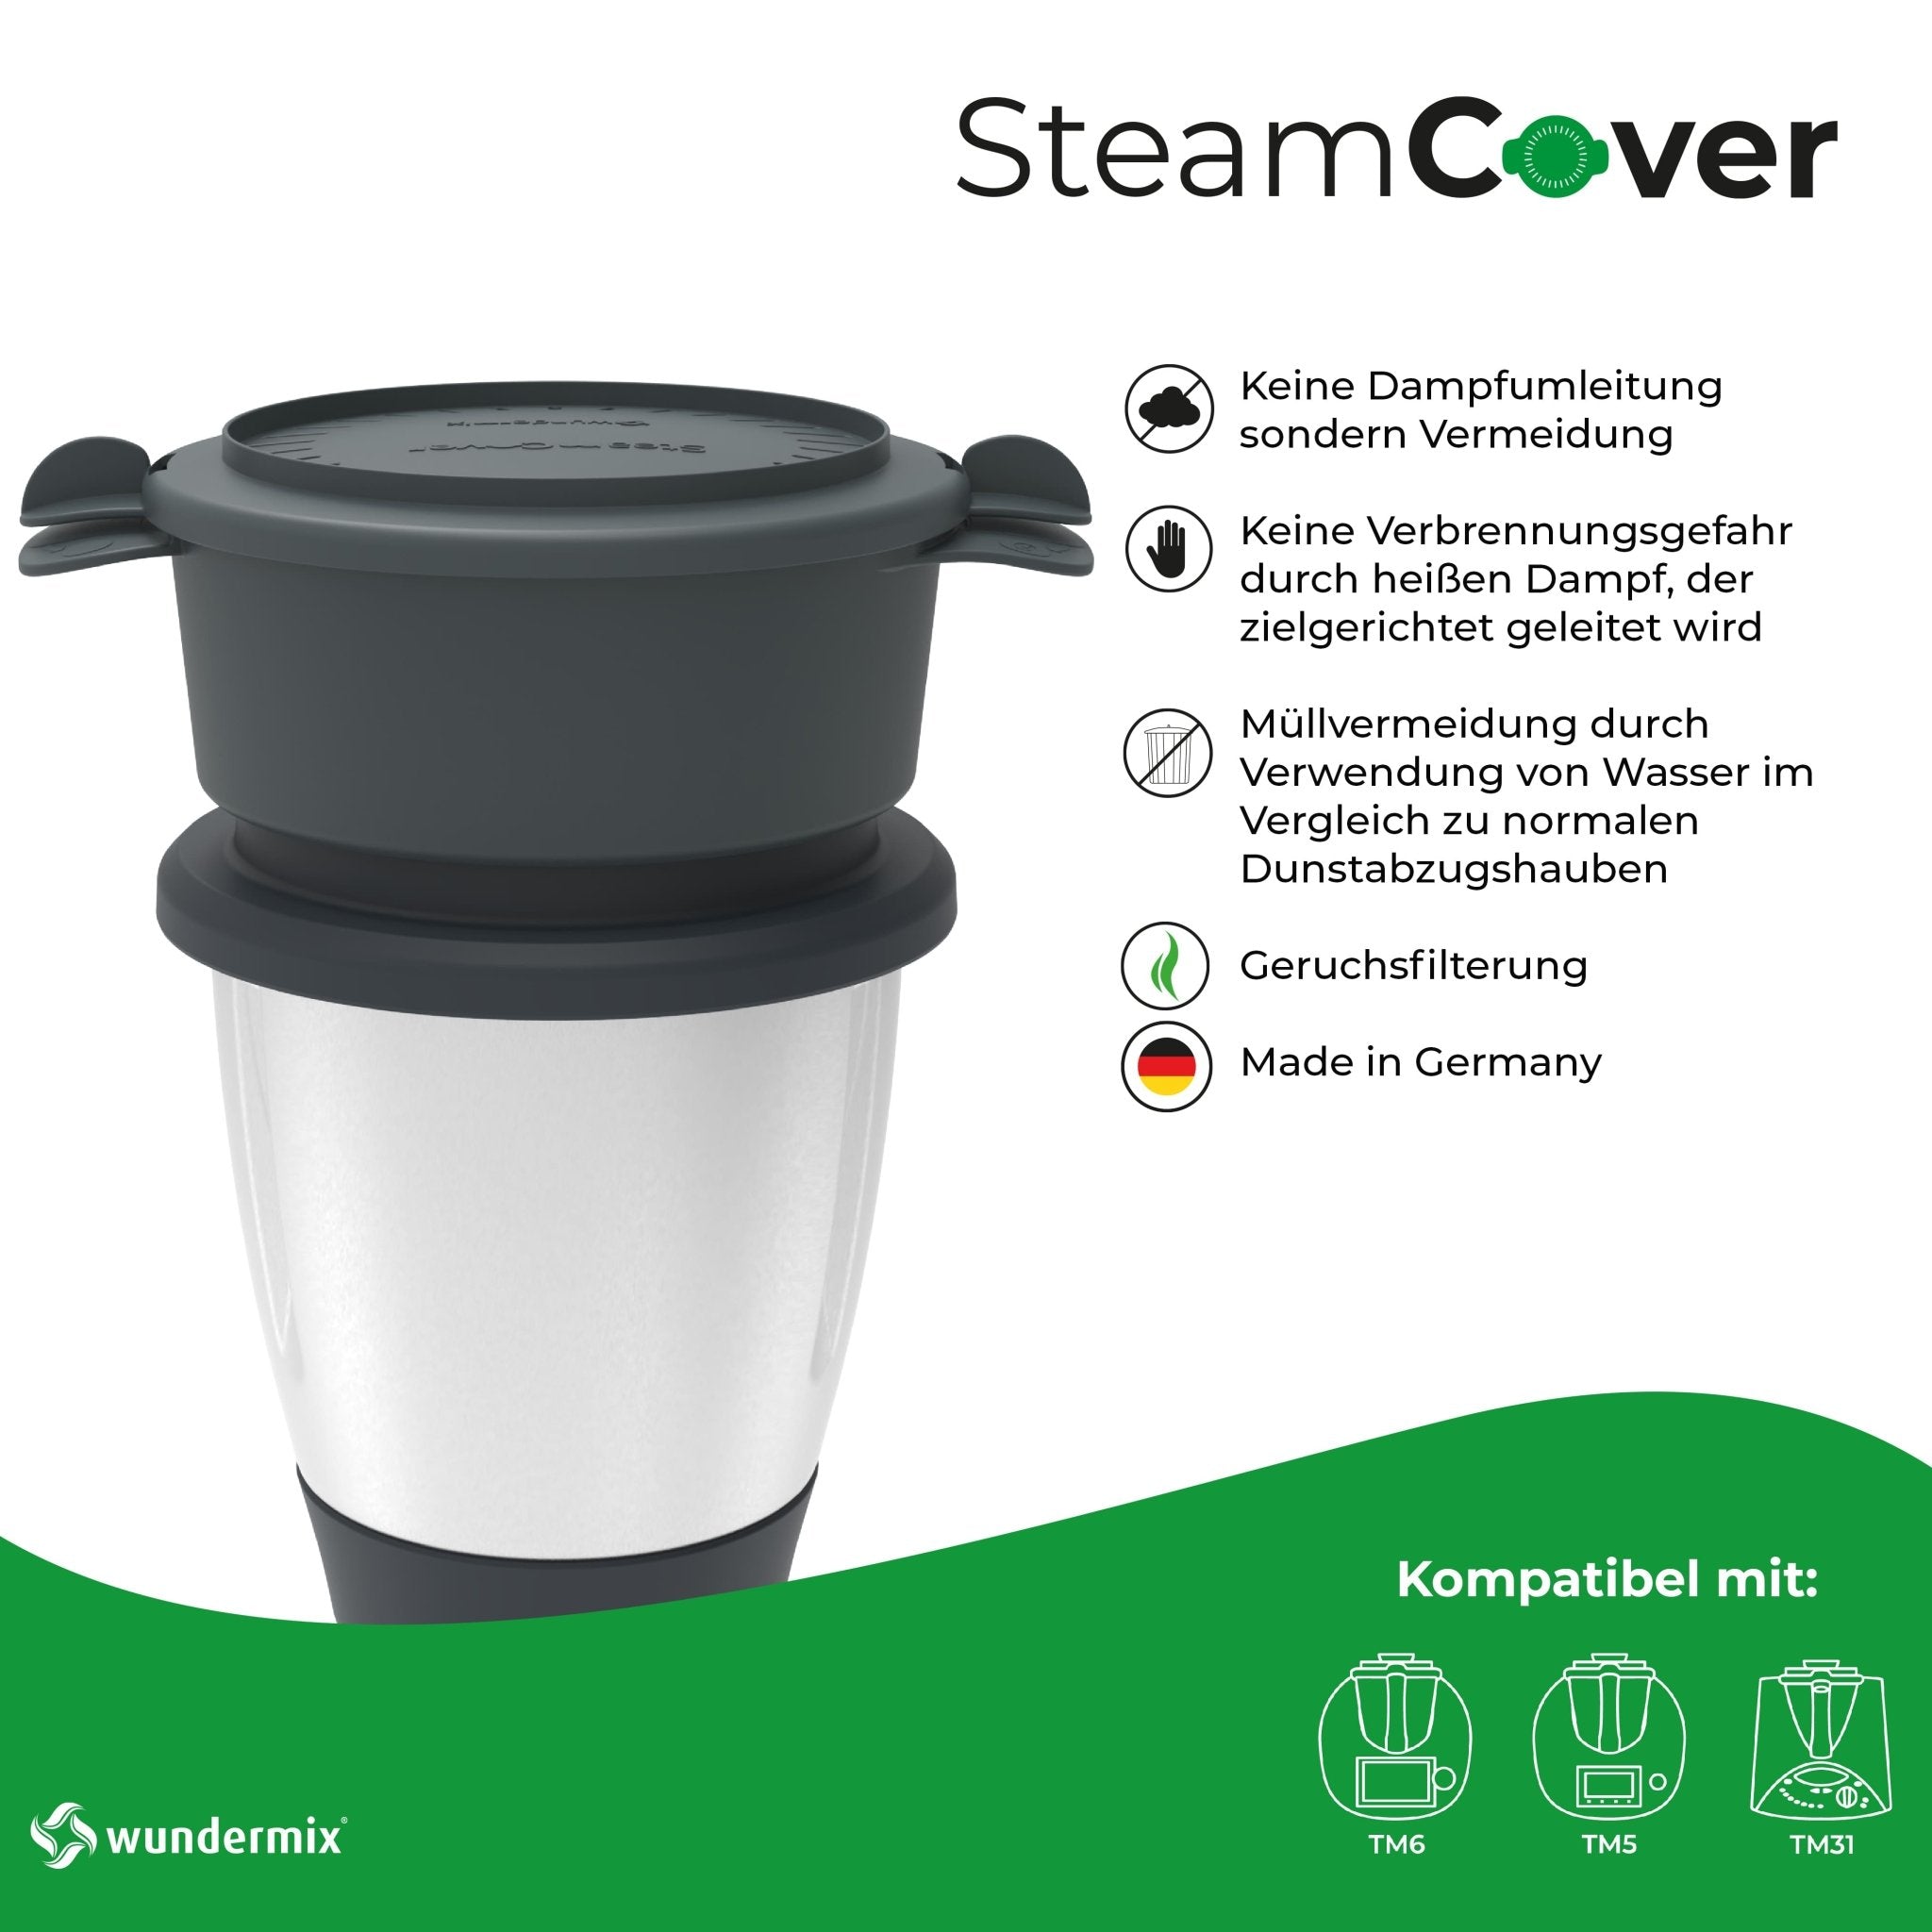 SteamCover® | Dampf- und Geruchsfilter für Thermomix TM6, TM5, TM31, TM Friend - Wundermix GmbH